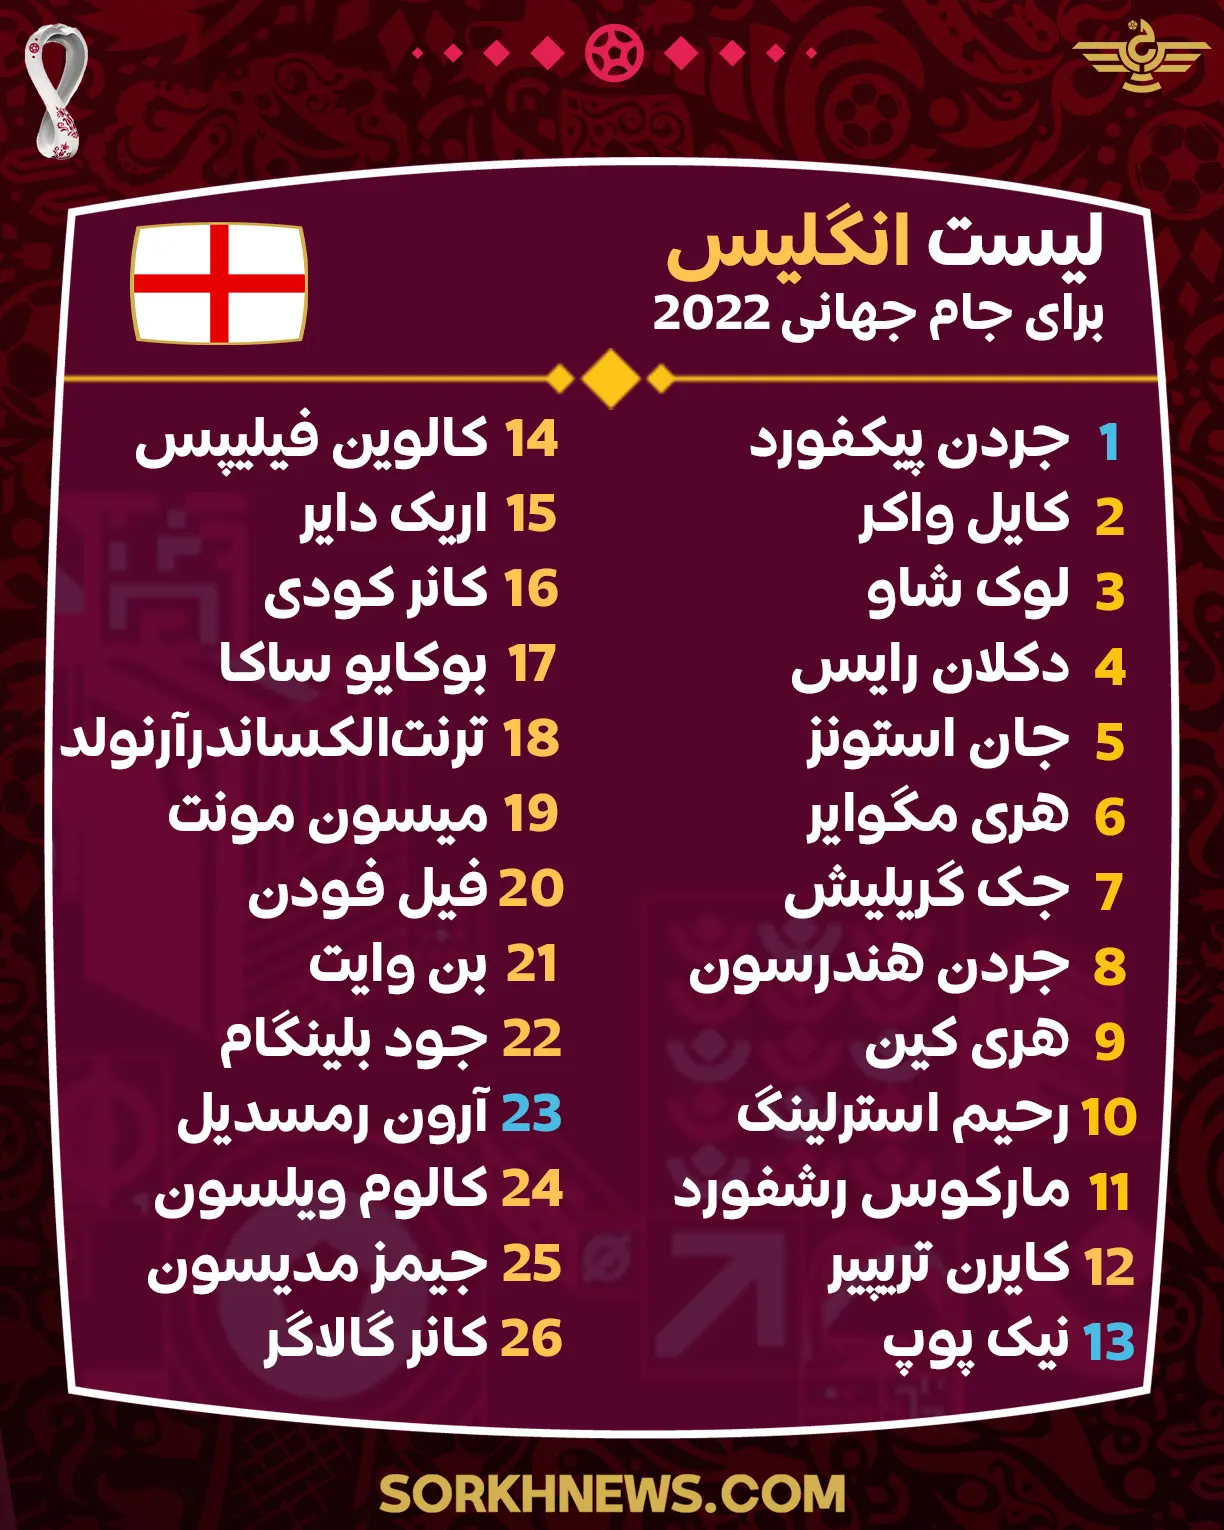 لیست تیم ملی انگلیس برای جام جهانی 2022